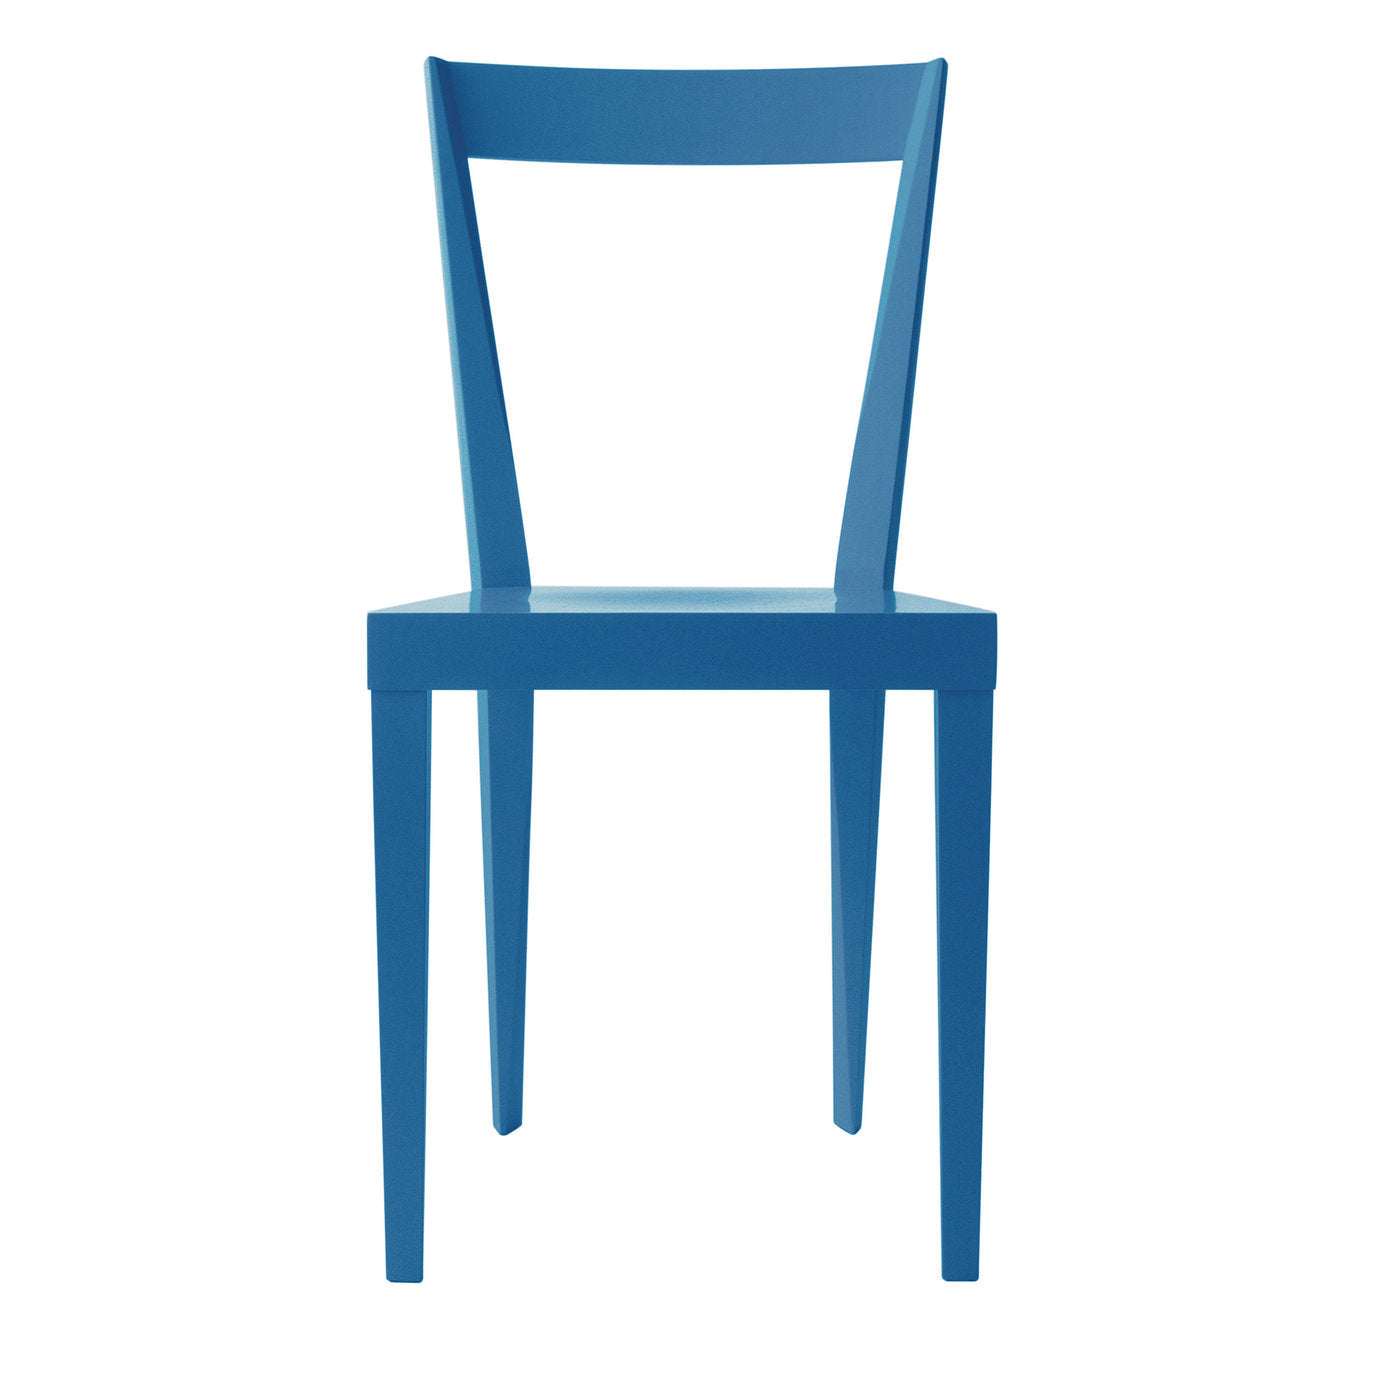 2er set livia blaue stühle by Giò Ponti - Hauptansicht